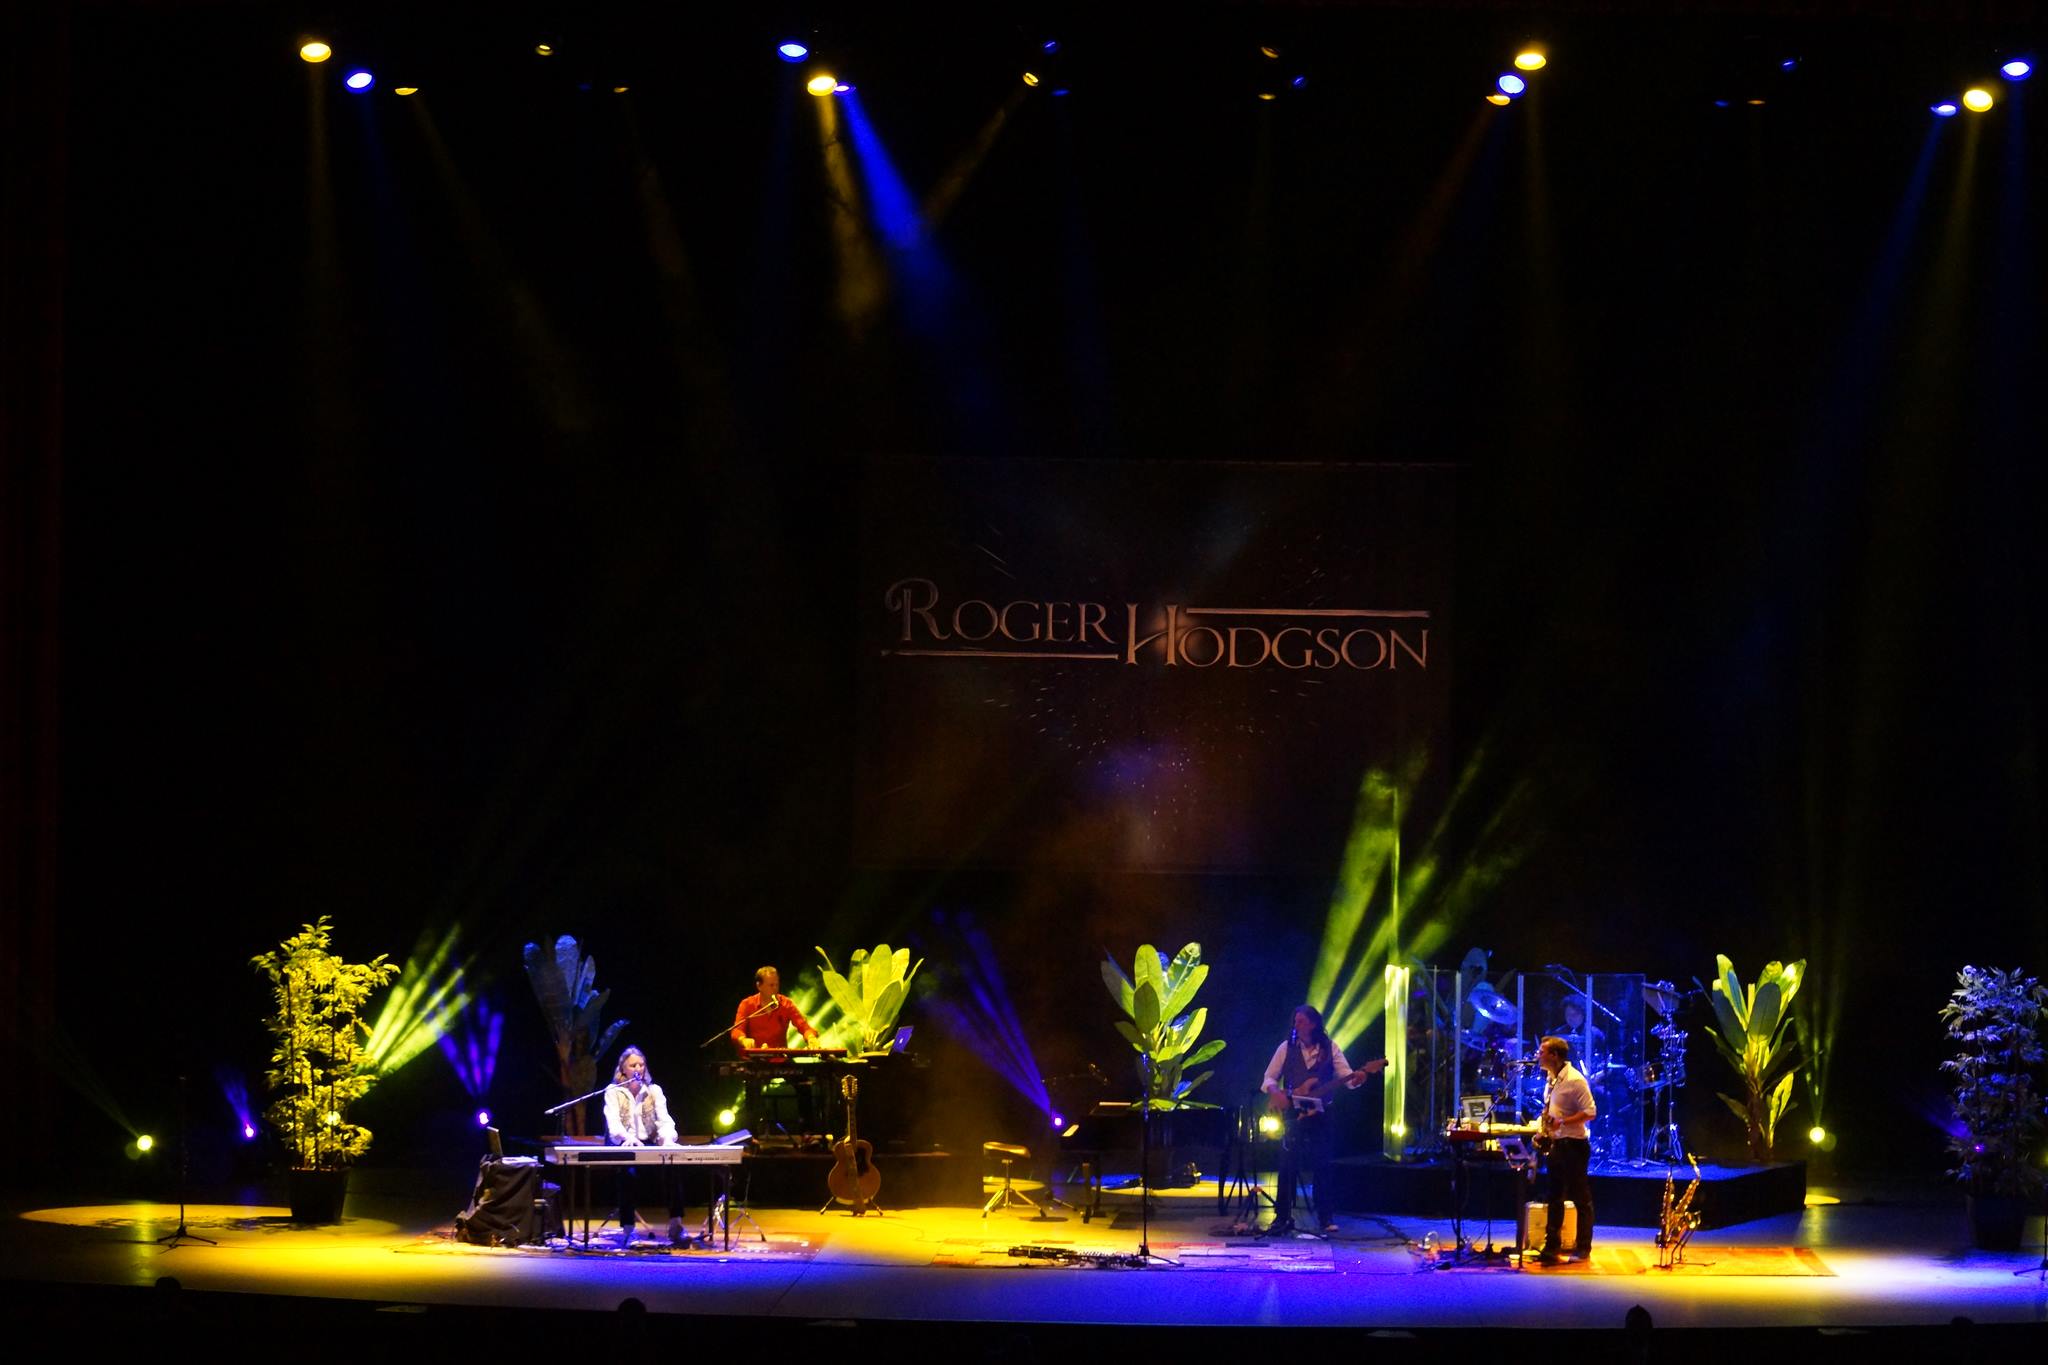 Roger Hodgson ~ Auditorio Nacional ~ Mexico City, Mexico